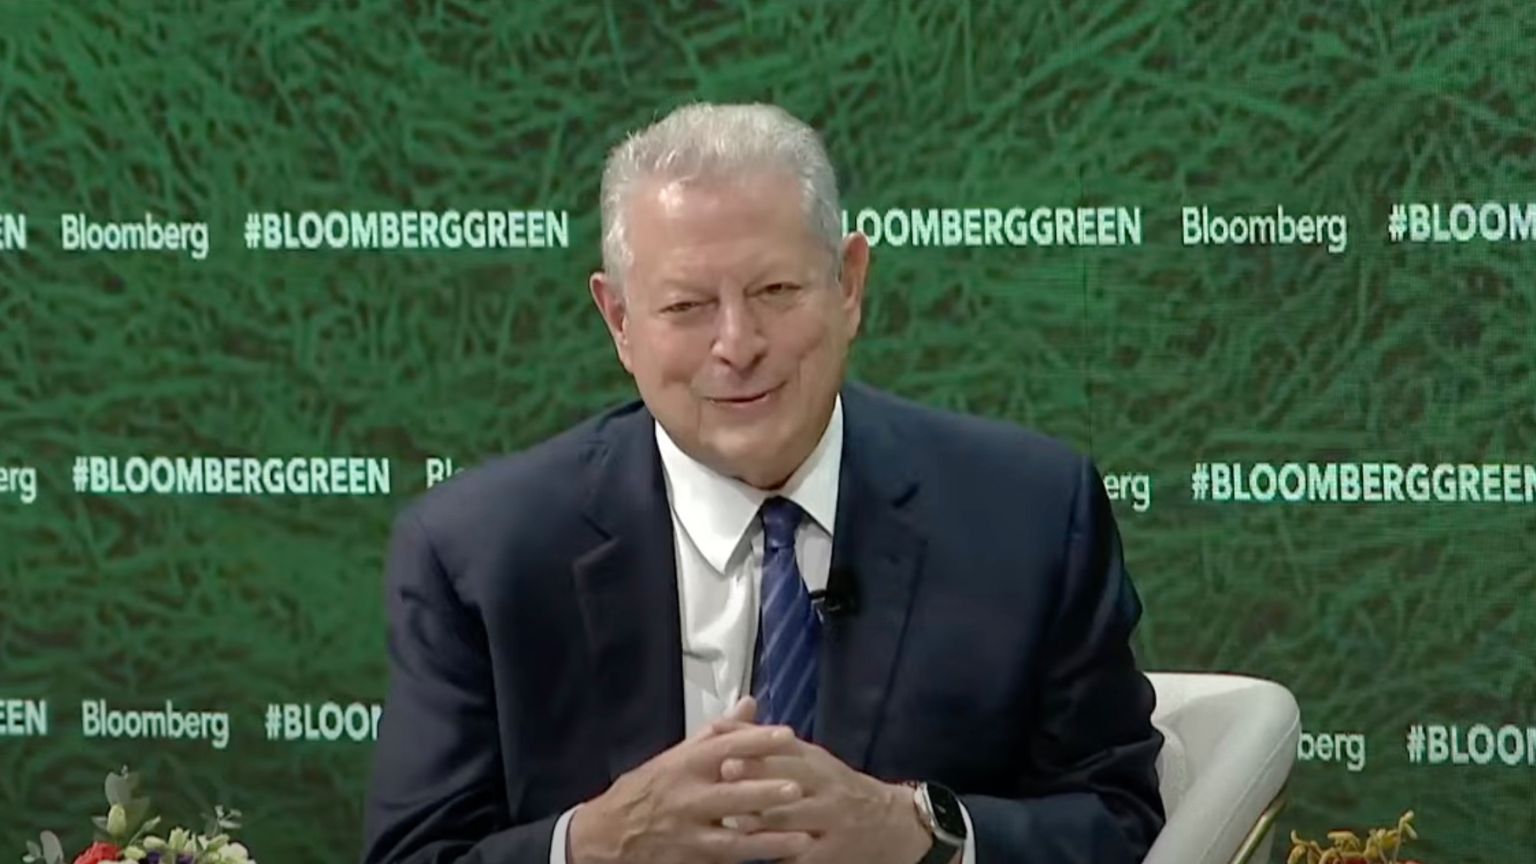 Al Gore Likens Social Media Algorithms To AR-15s, Calls For a Ban